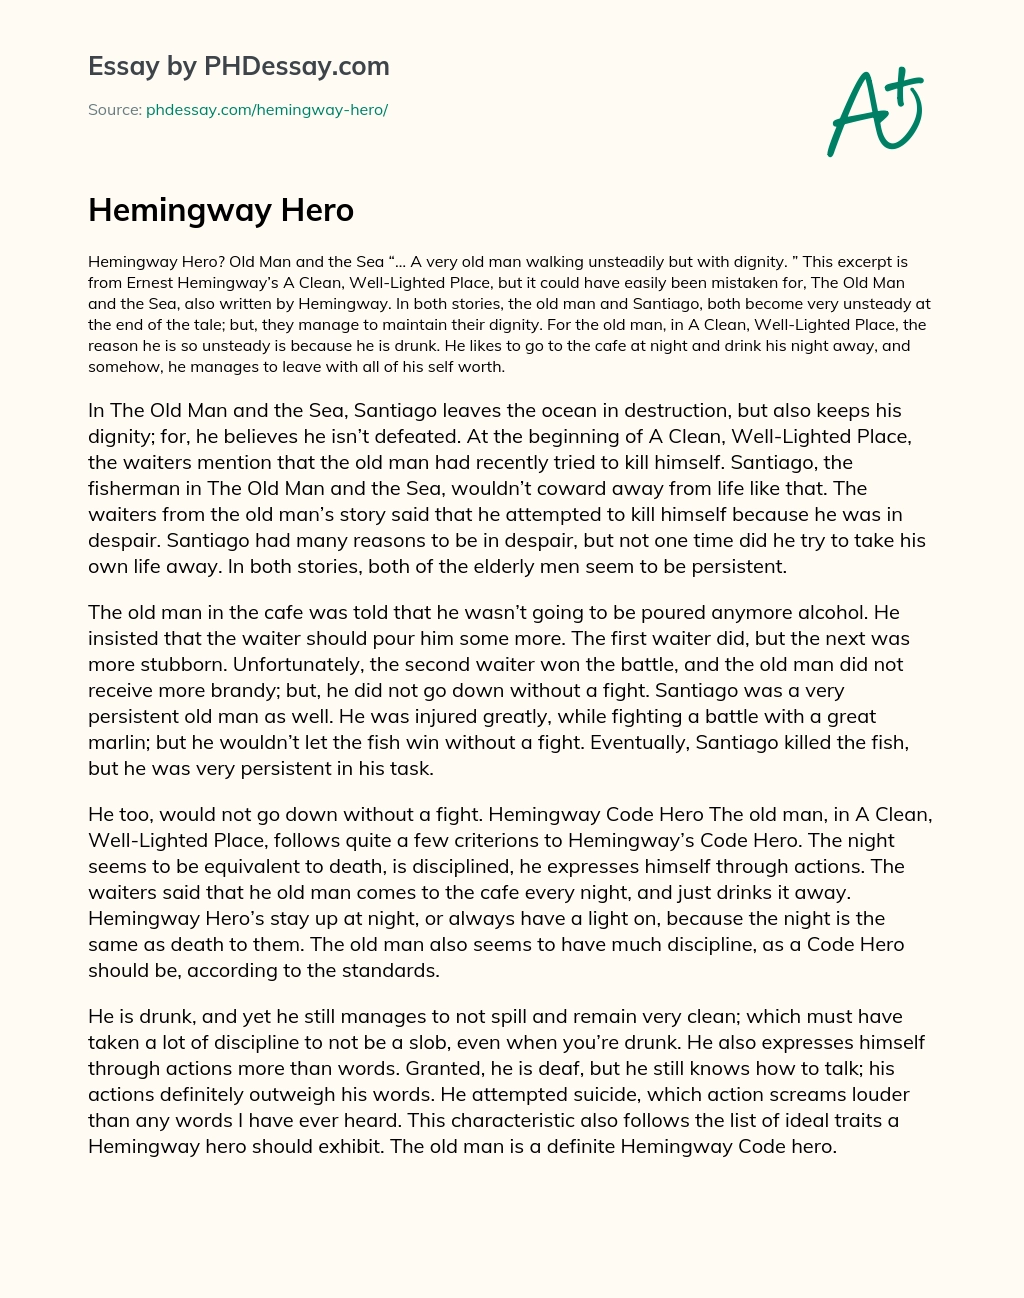 Hemingway Hero essay